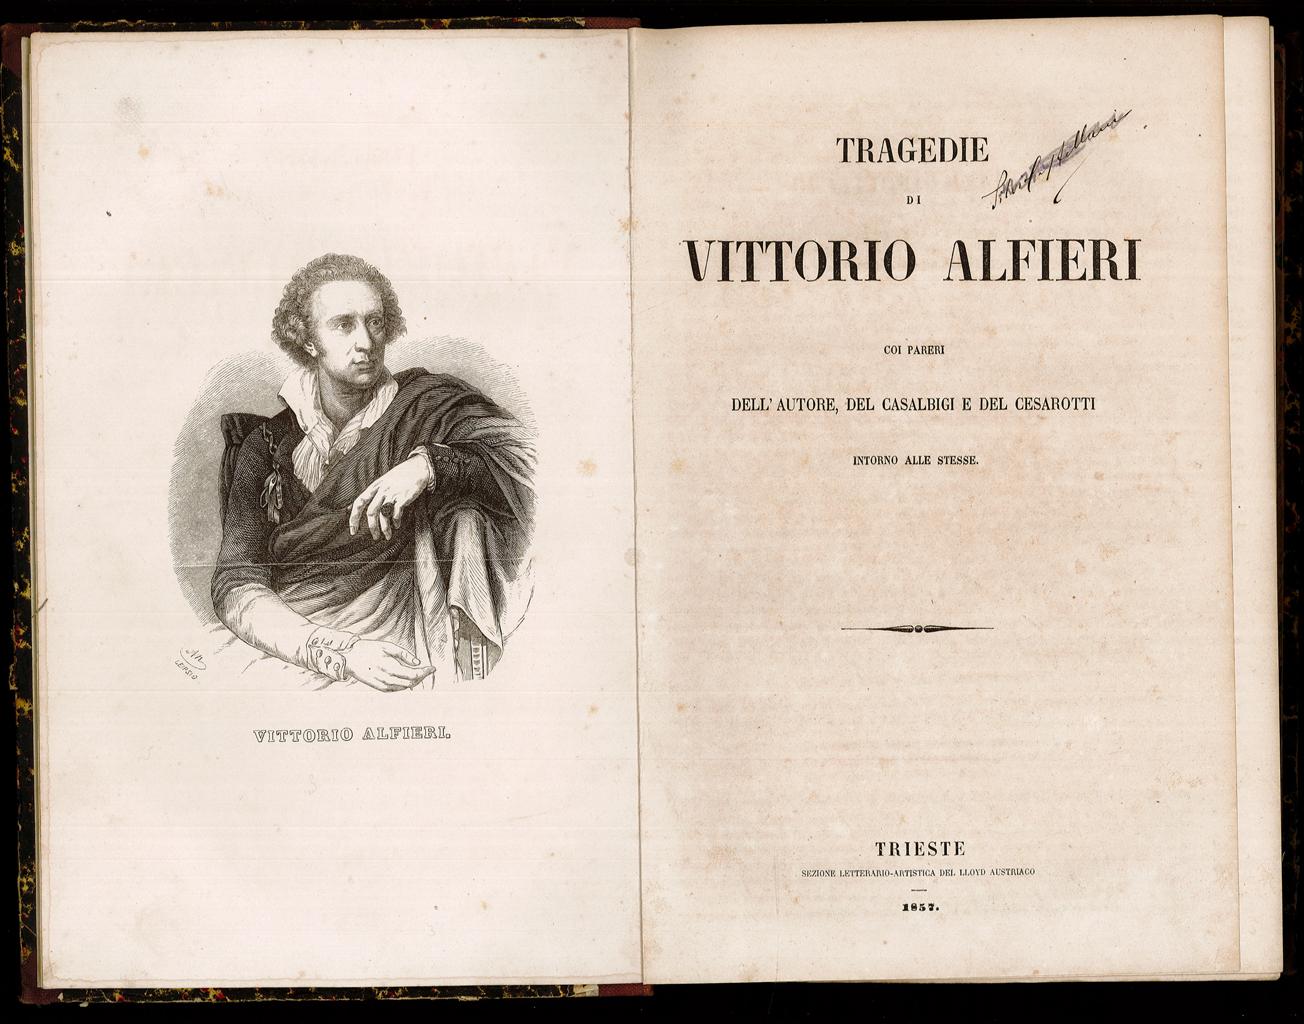 Tragedie di Vittorio Alfieri da Alfieri Vittorio: (1857) | Sergio Trippini